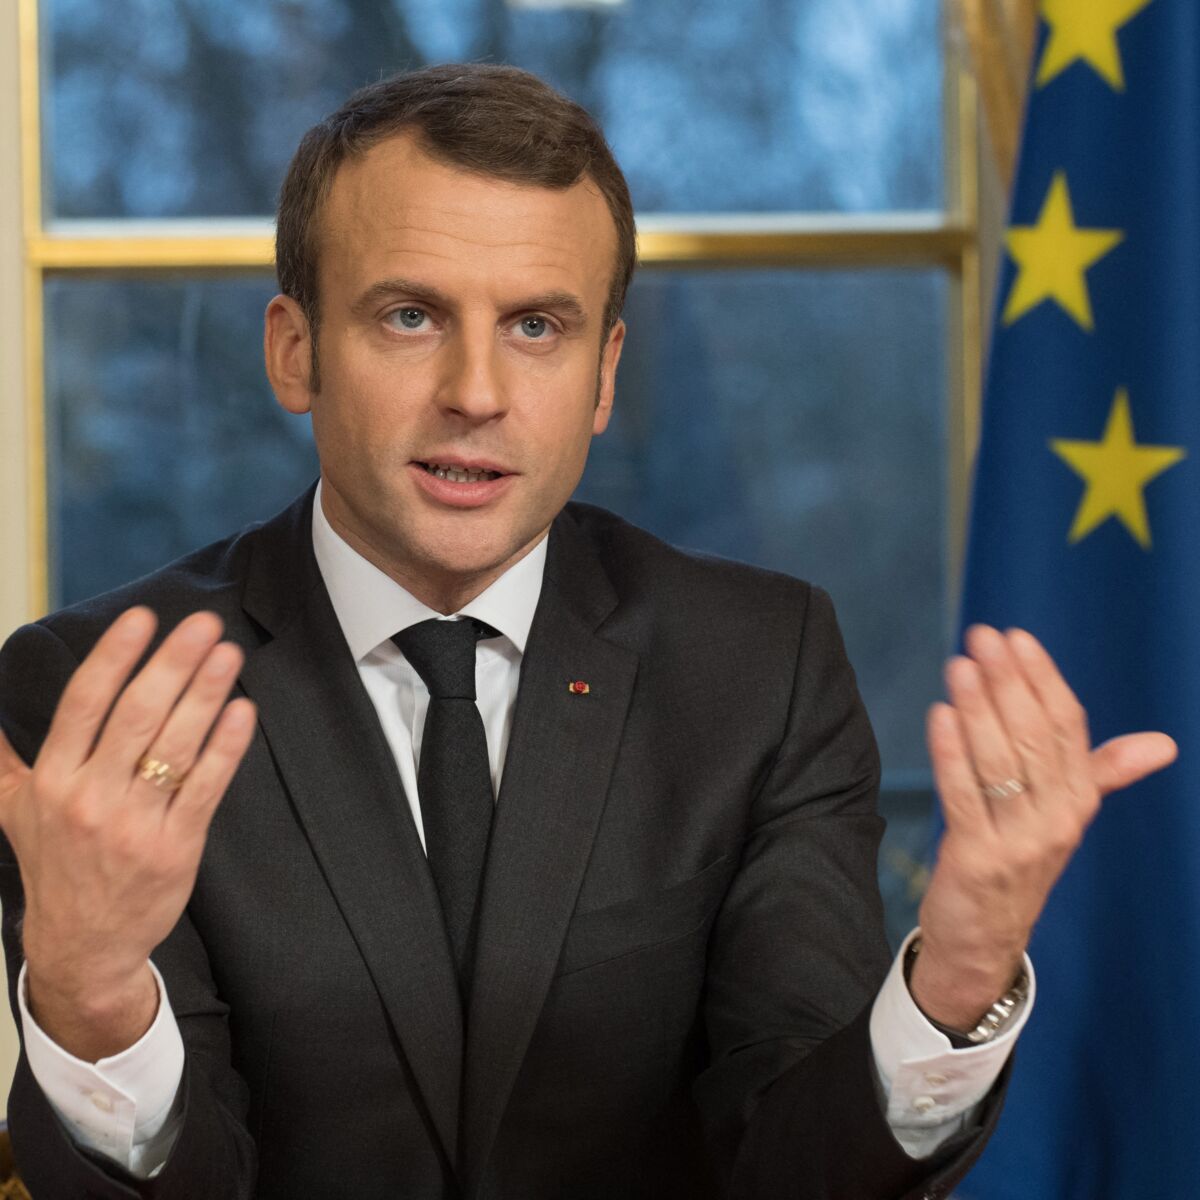 Conférence de presse d'Emmanuel Macron : comment le président s